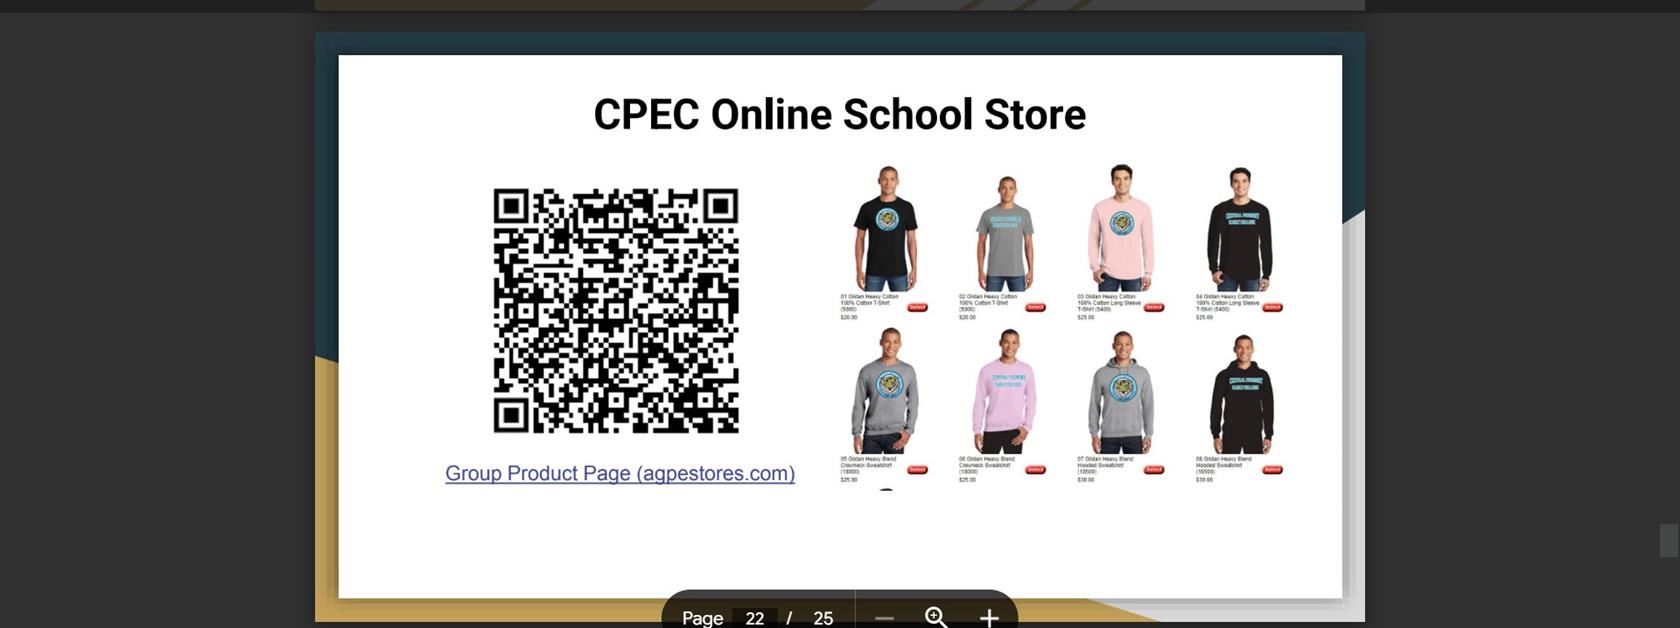 Updated CPEC Online School Store